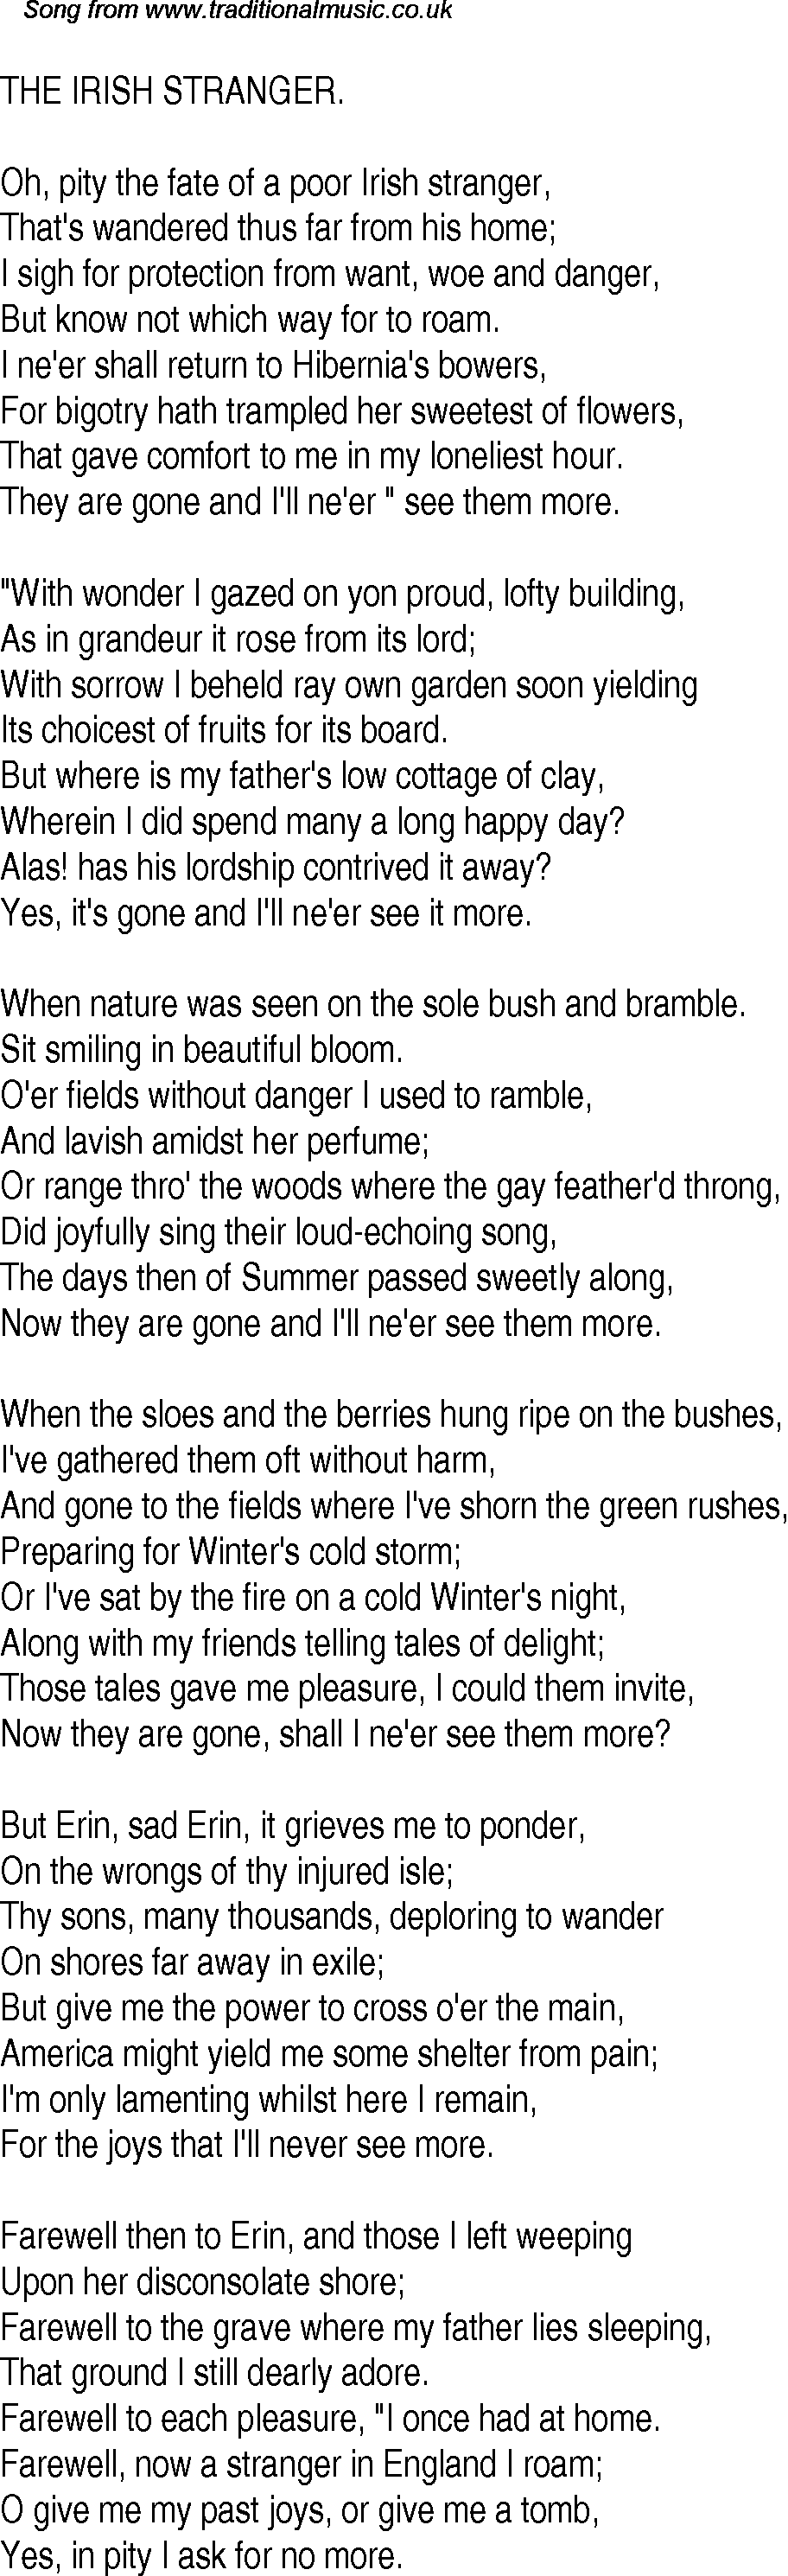 old time song lyrics for 11 the irish stranger